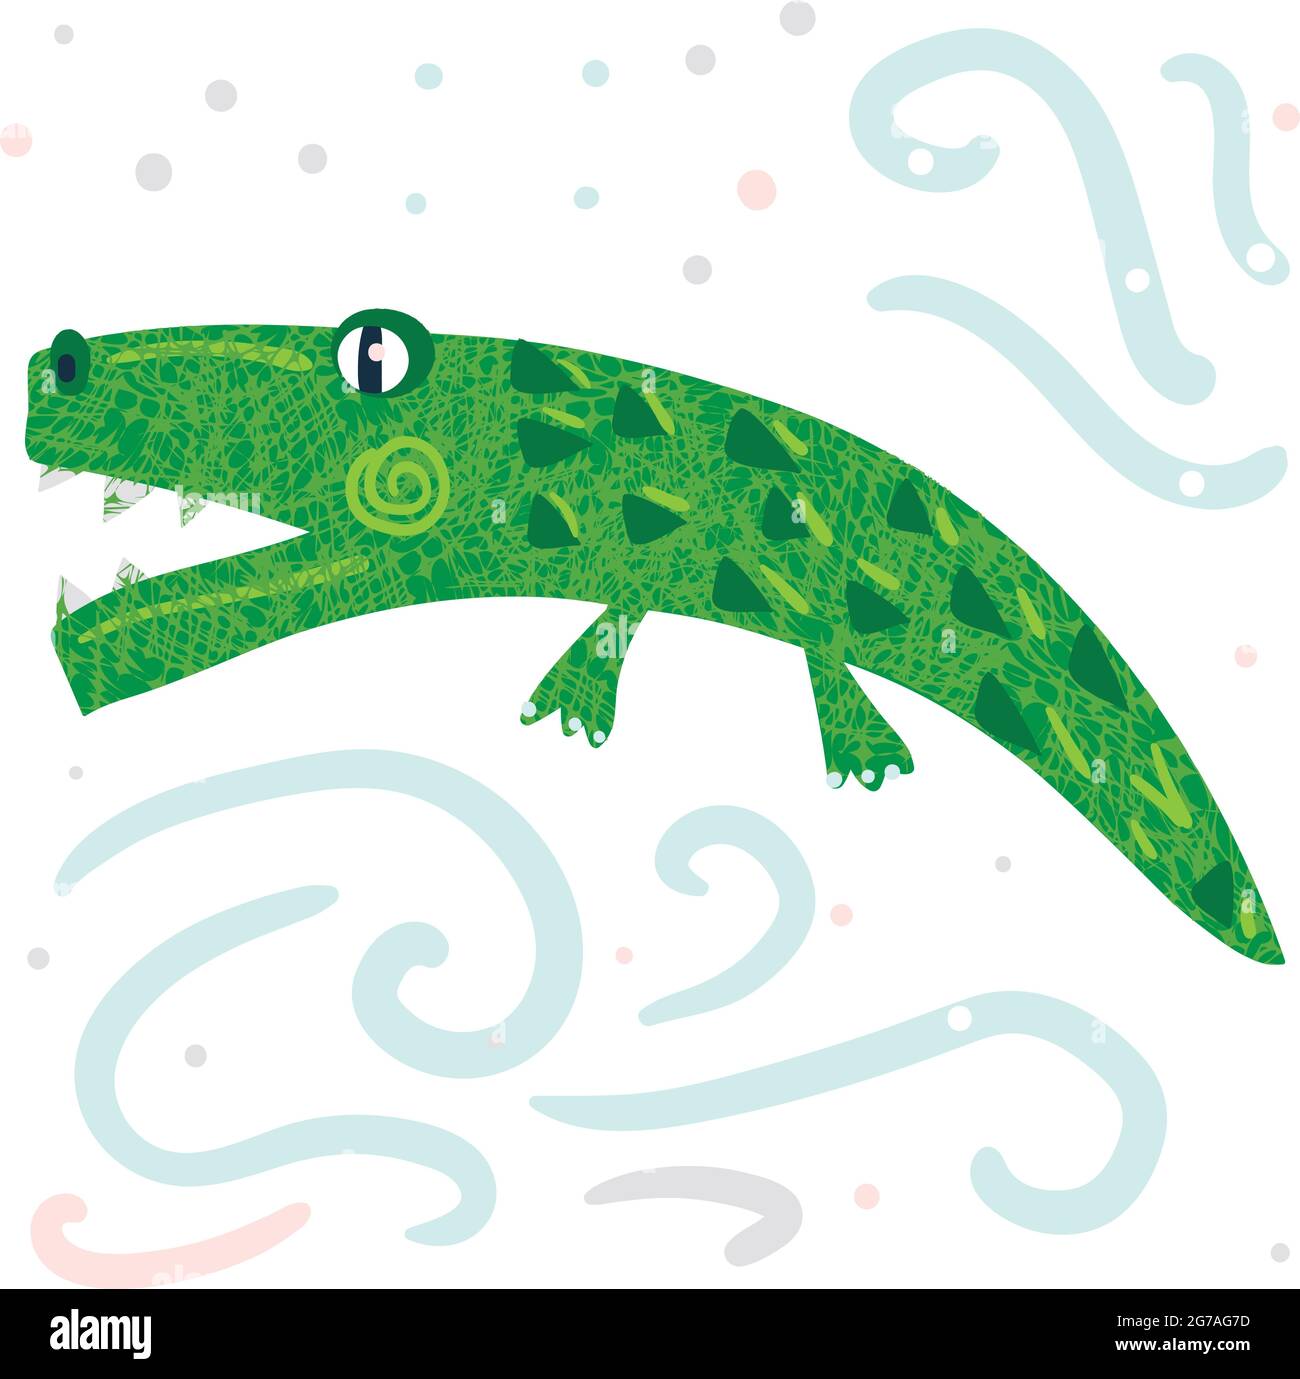 Eine grüne einfache niedliche Alligator Vektor-Illustration Stock Vektor